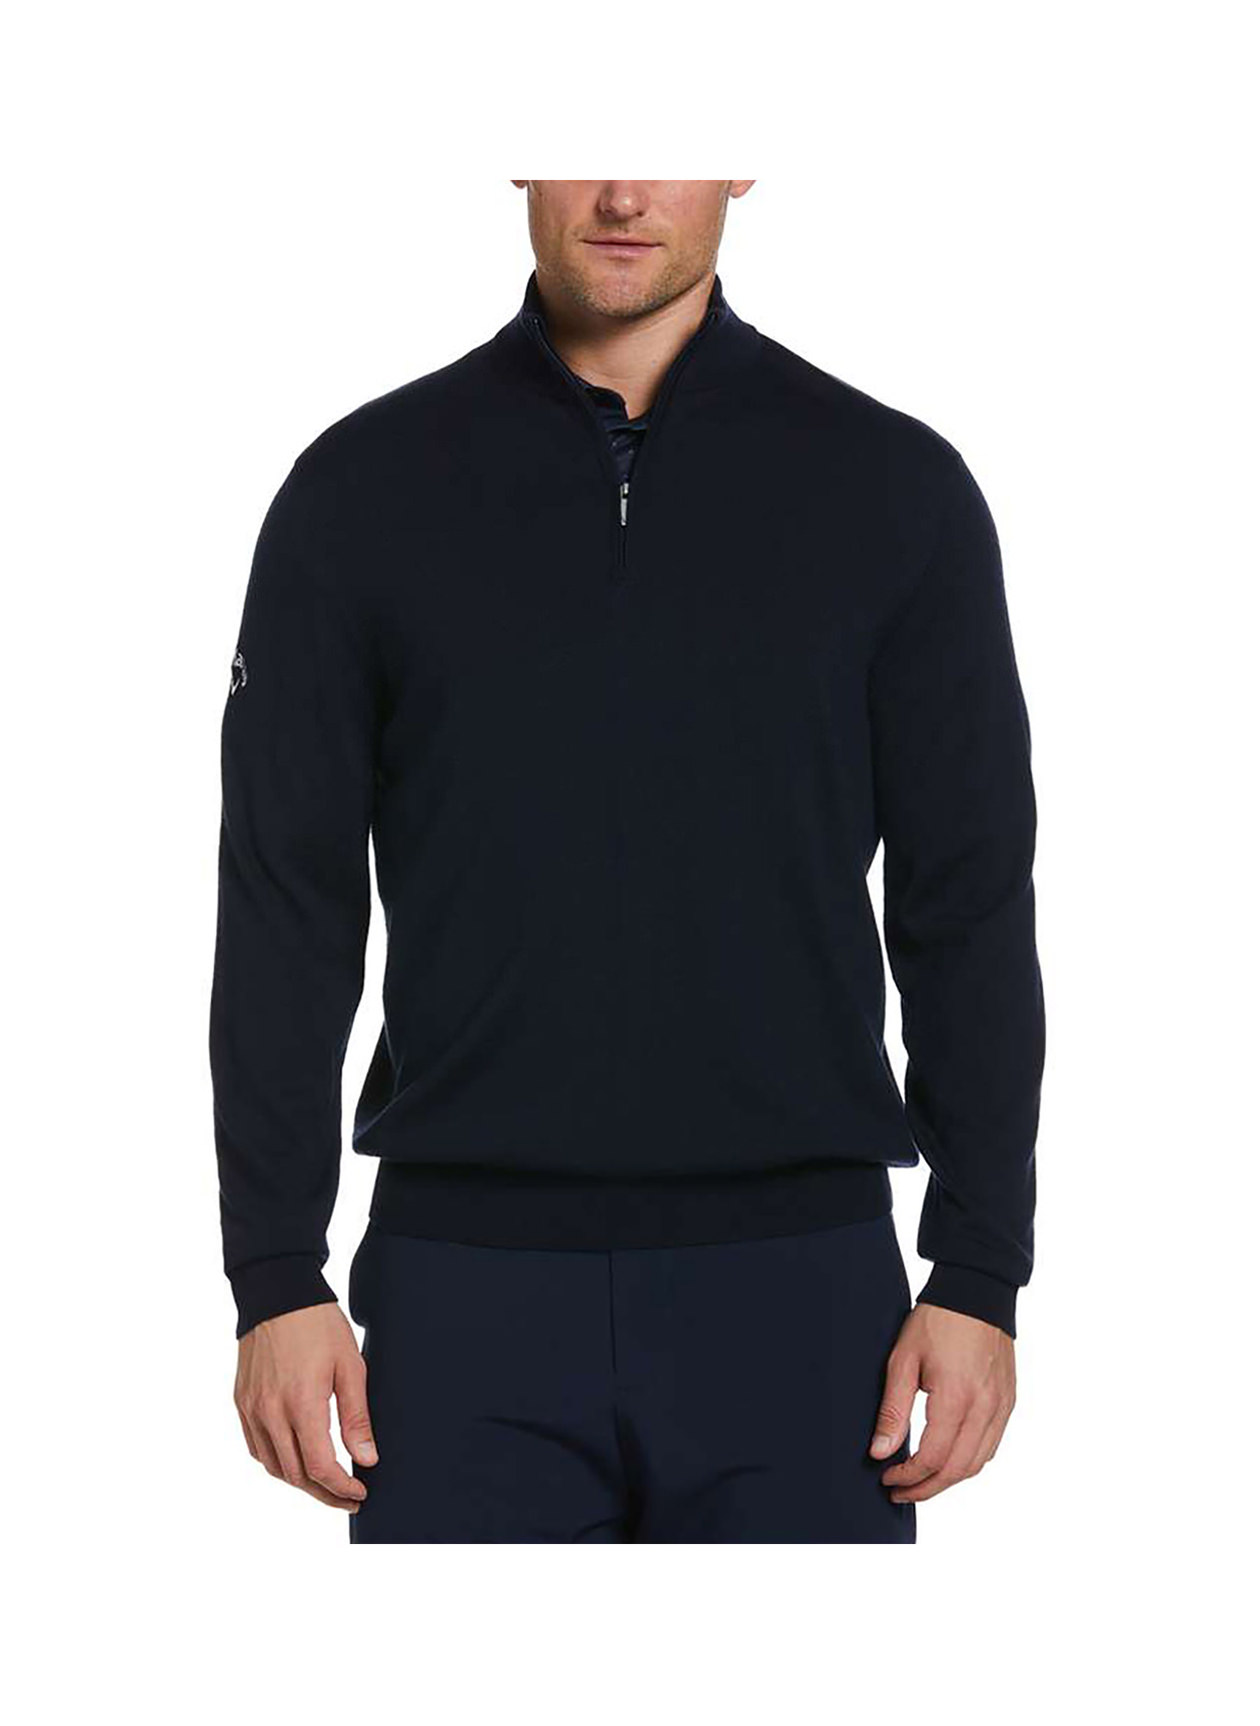 Callaway Men's Golf   Navy Blue Quarter-Zip Merino Sweater